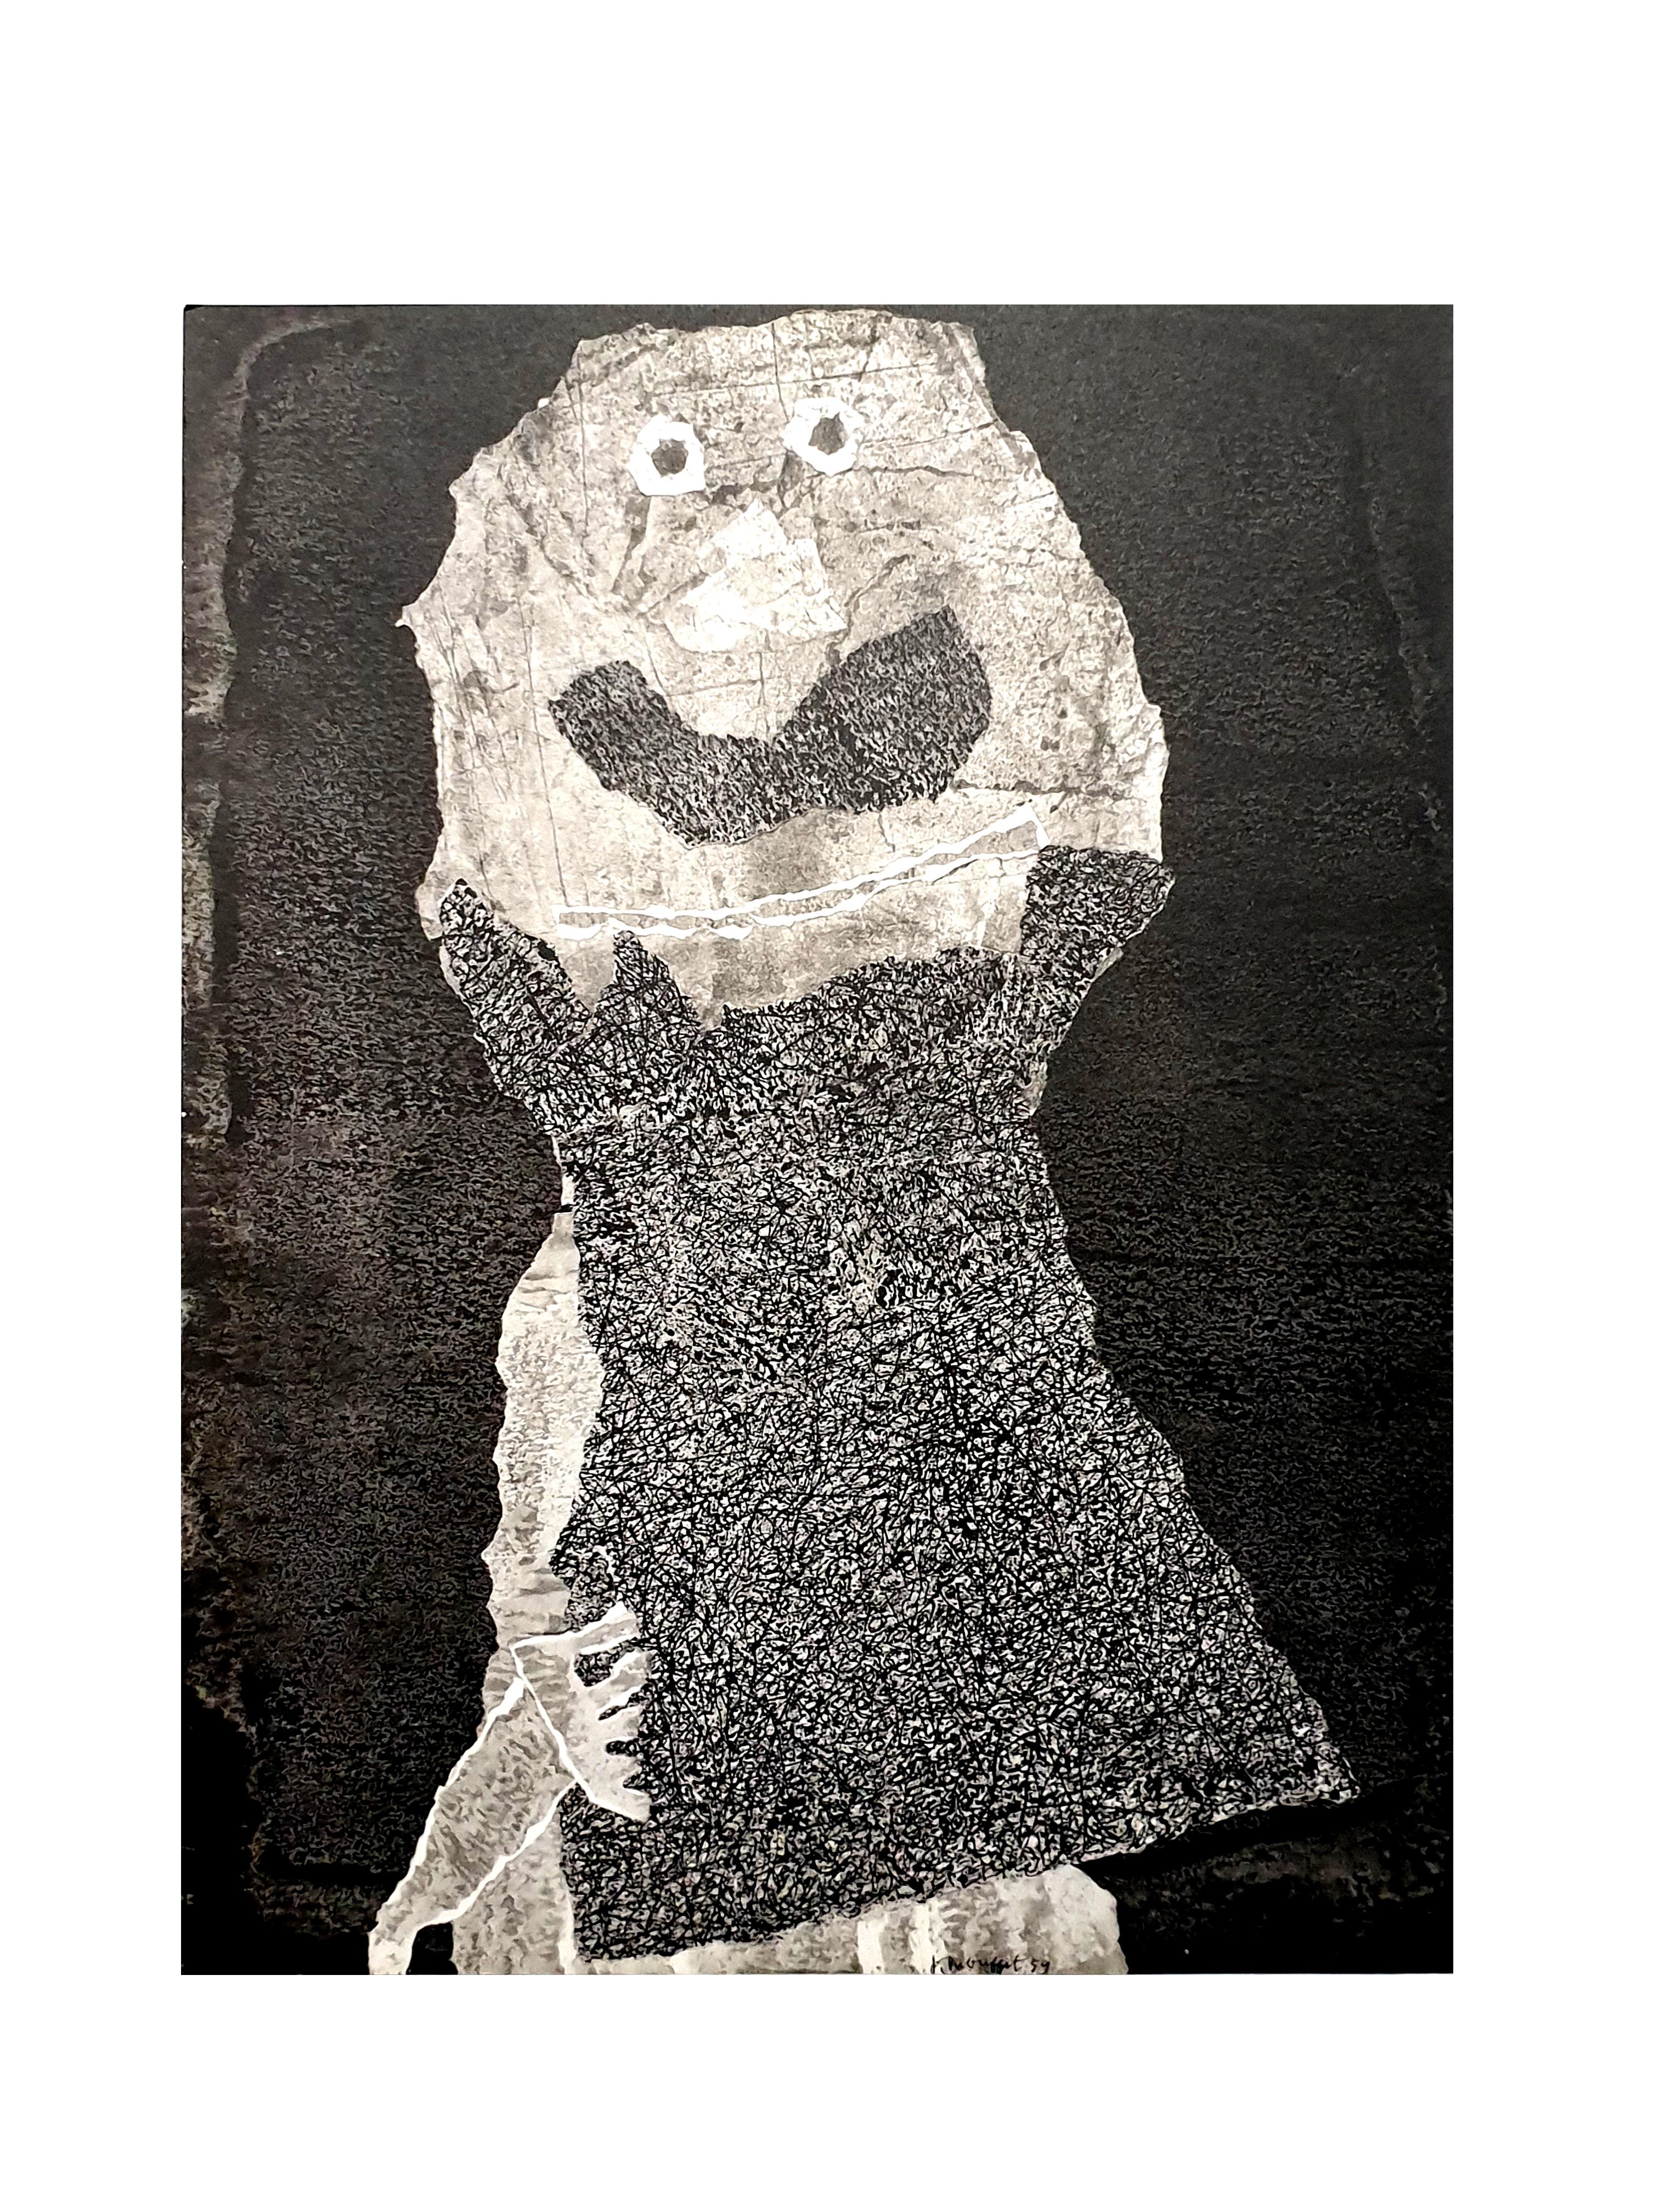 nach Jean Dubuffet - Mann - Pochoir
1960
Abmessungen: 32 x 25 cm 
Ausgabe: G. di San Lazzaro.
Aus der Kunstzeitschrift XXème siècle
Unsigniert und nicht nummeriert wie ausgestellt